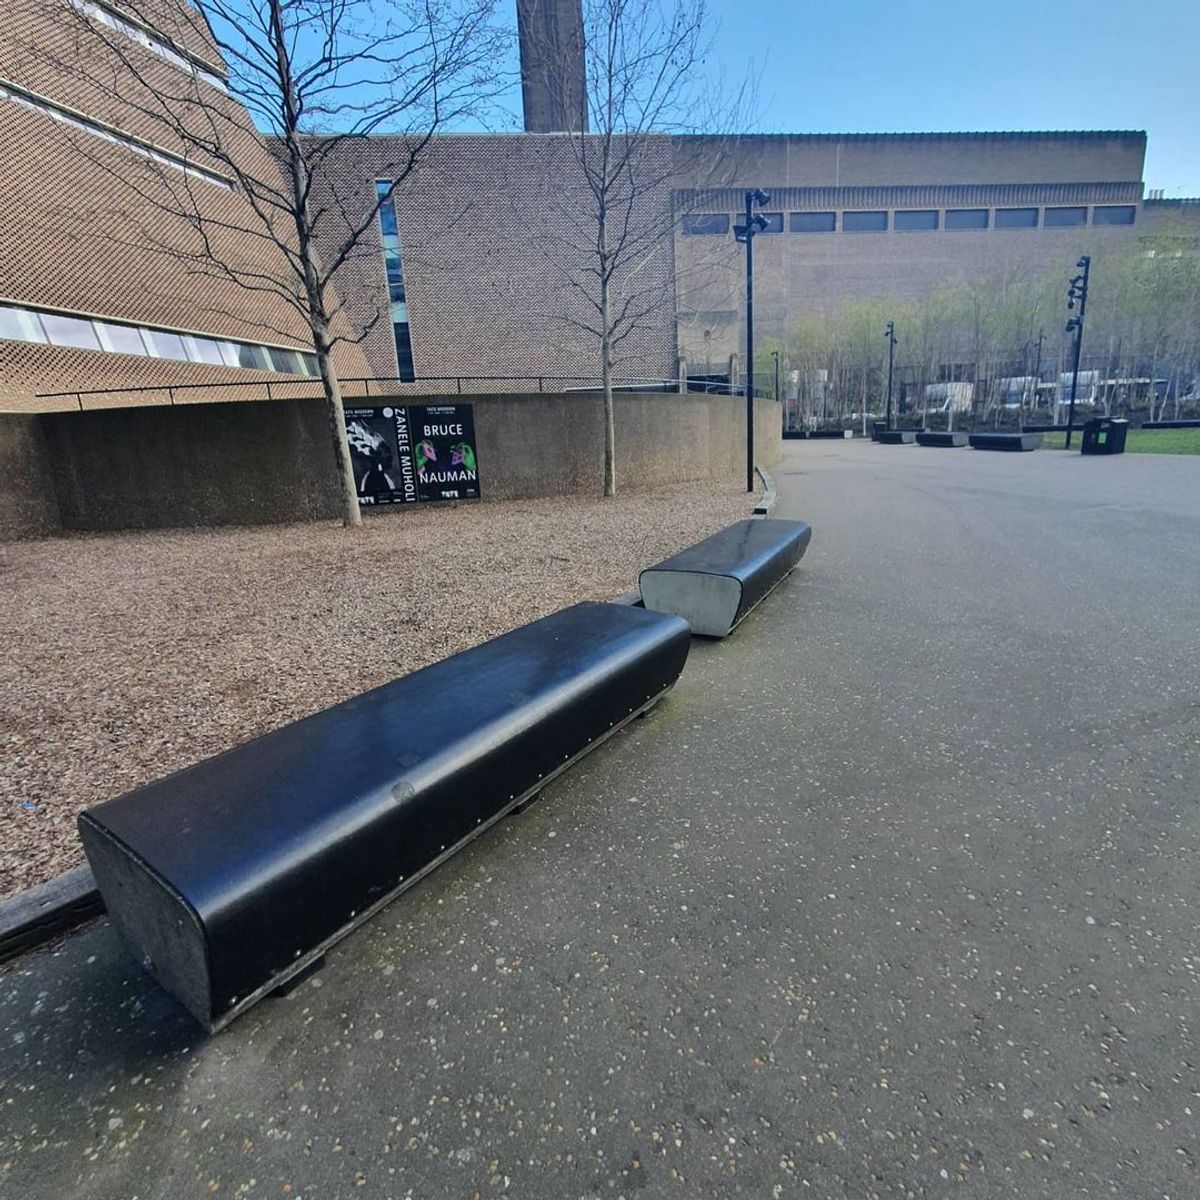 Image for skate spot Tate Modern - Black Ledges